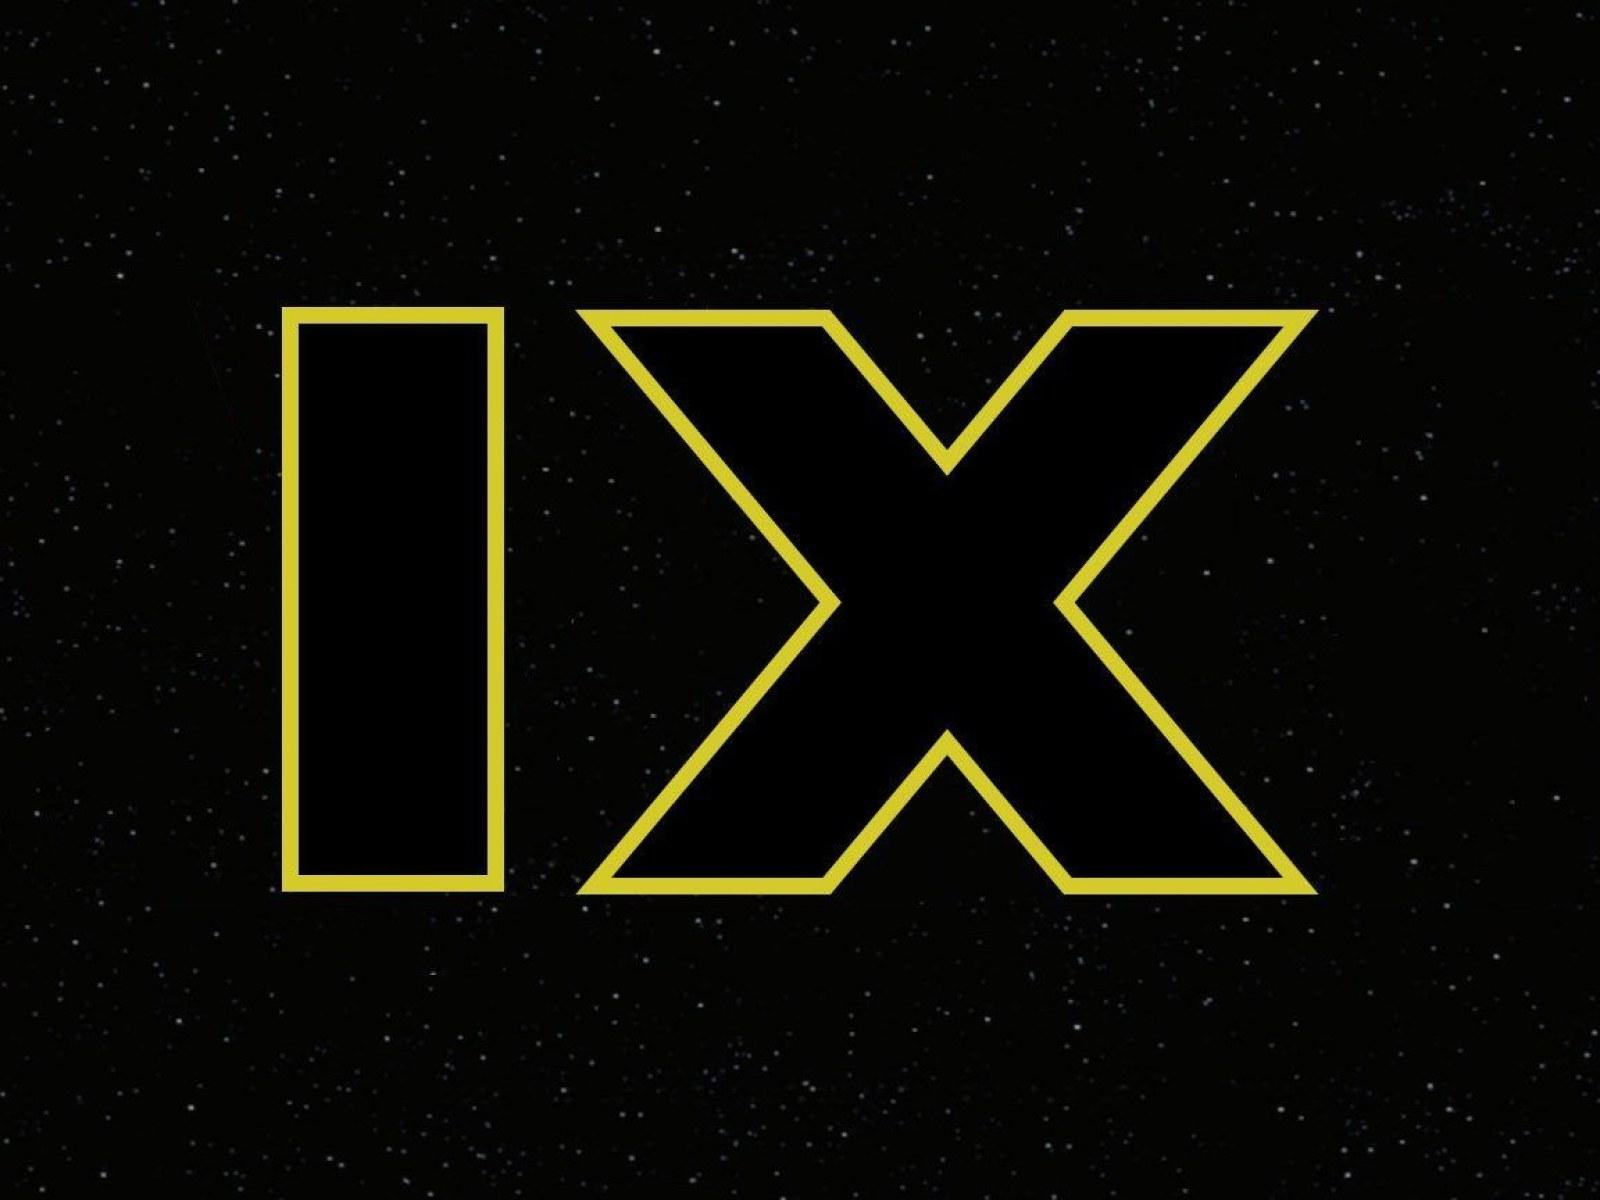 No 'Star Wars: Episode IX' Super Bowl Trailer, So When is